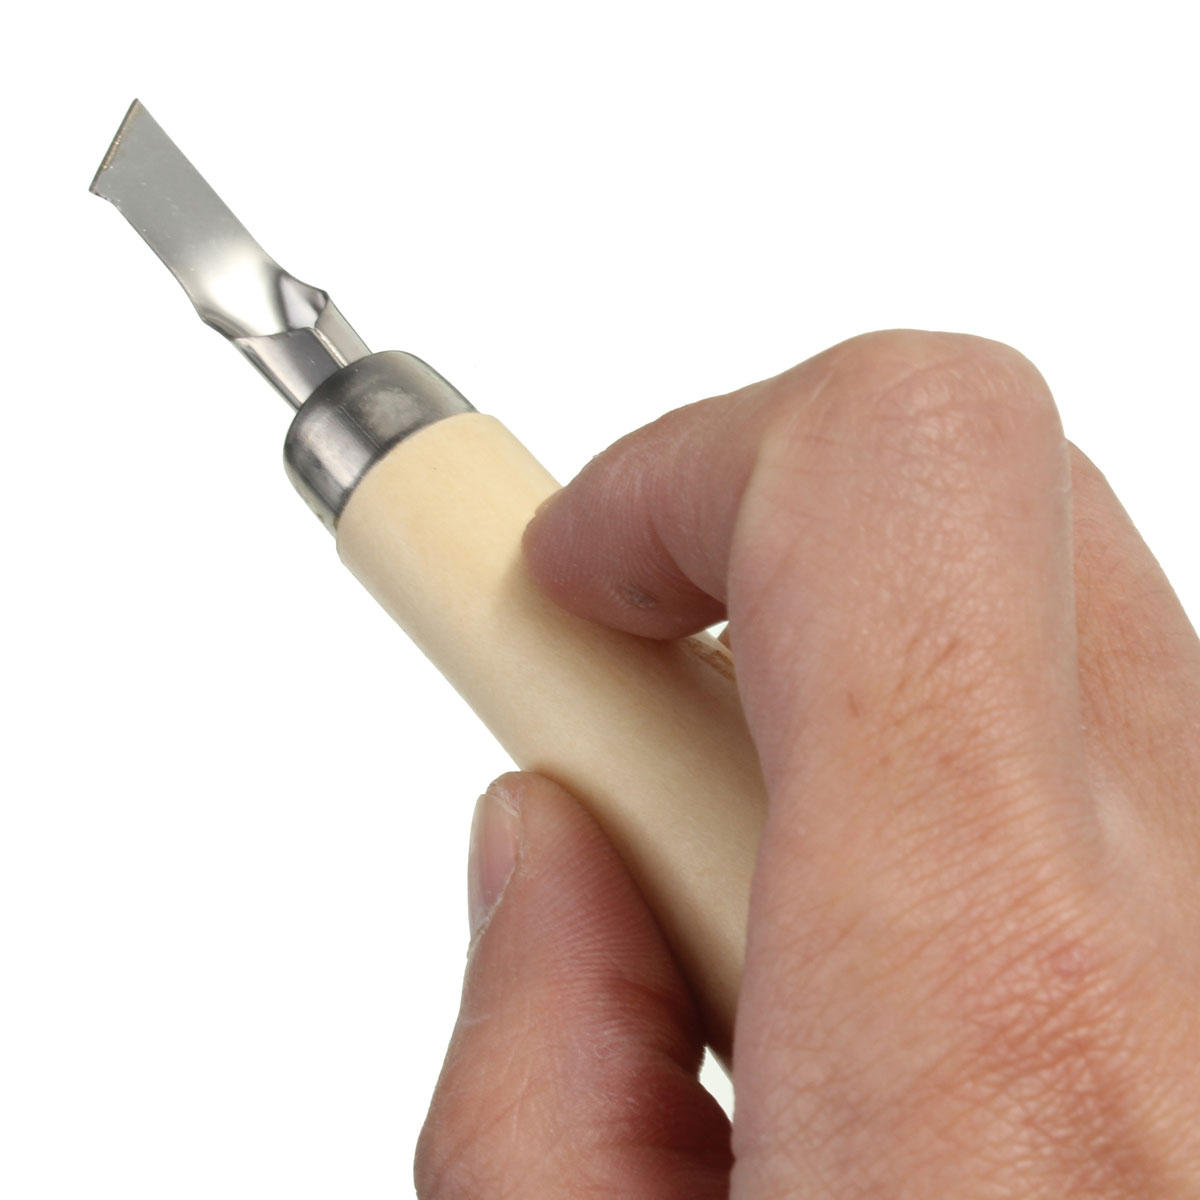 linoblok die rubberstempel snijdende hulpmiddelen met 5 bladbeetjes voor druk het snijden snijden